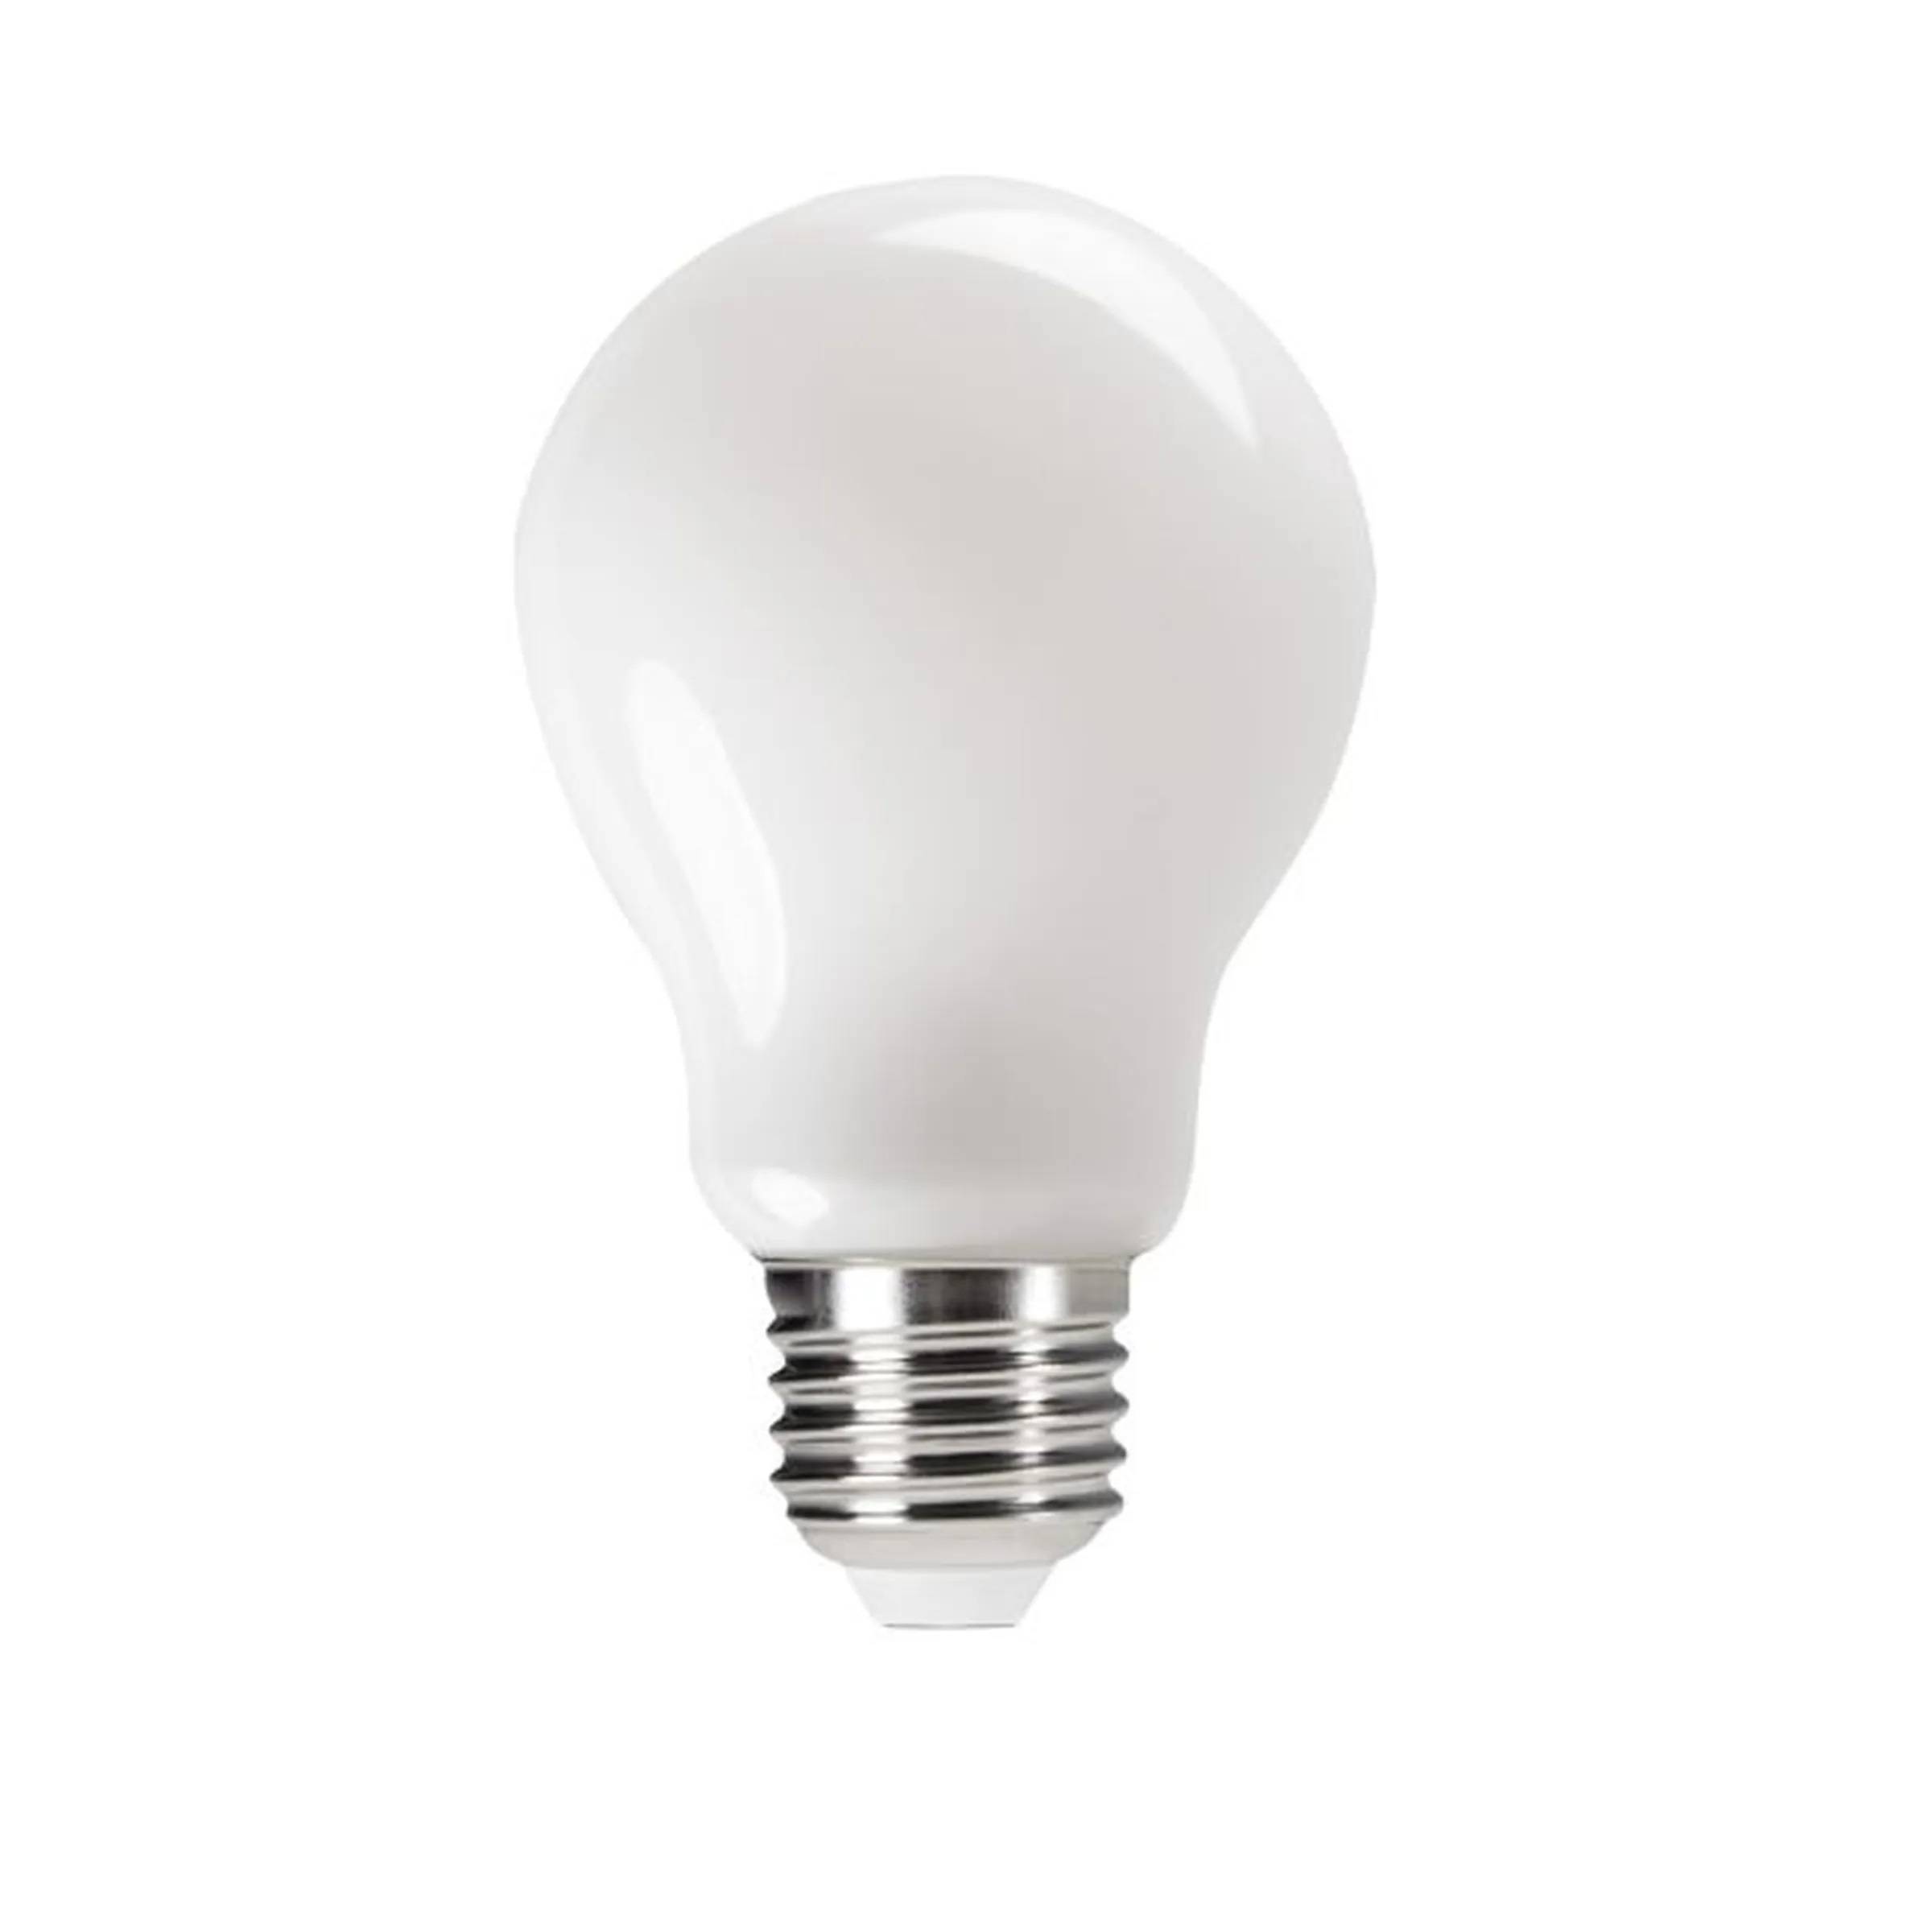 Ampoule sphérique transparente LED-HV lumière blanche chaude 2700